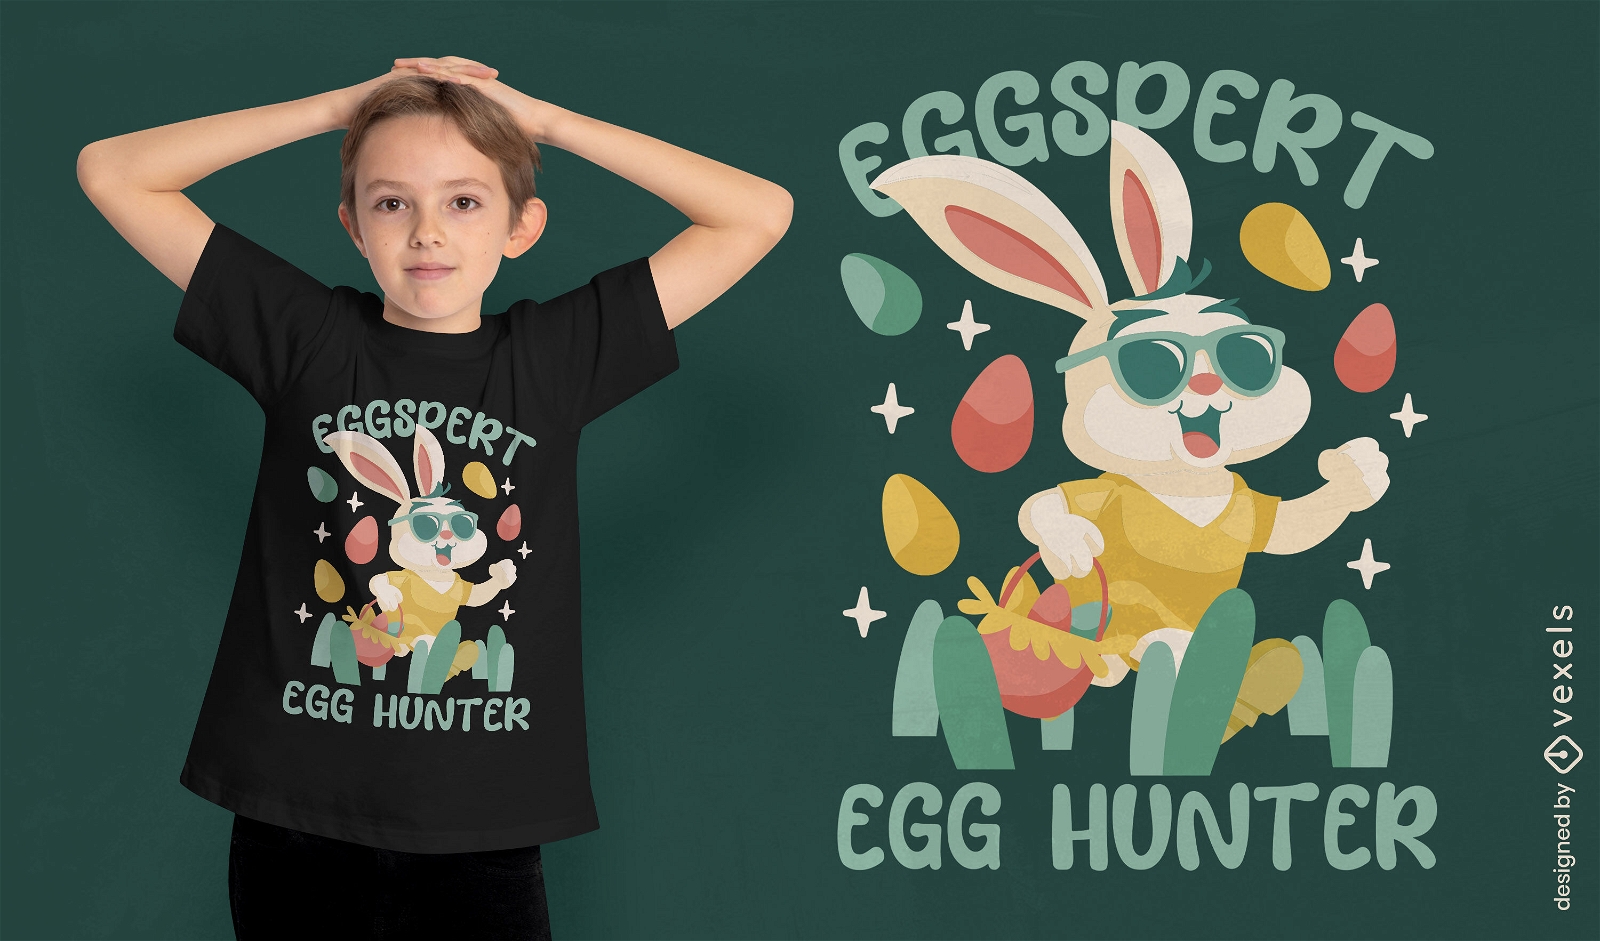 Easter egg hunter t-shirt design